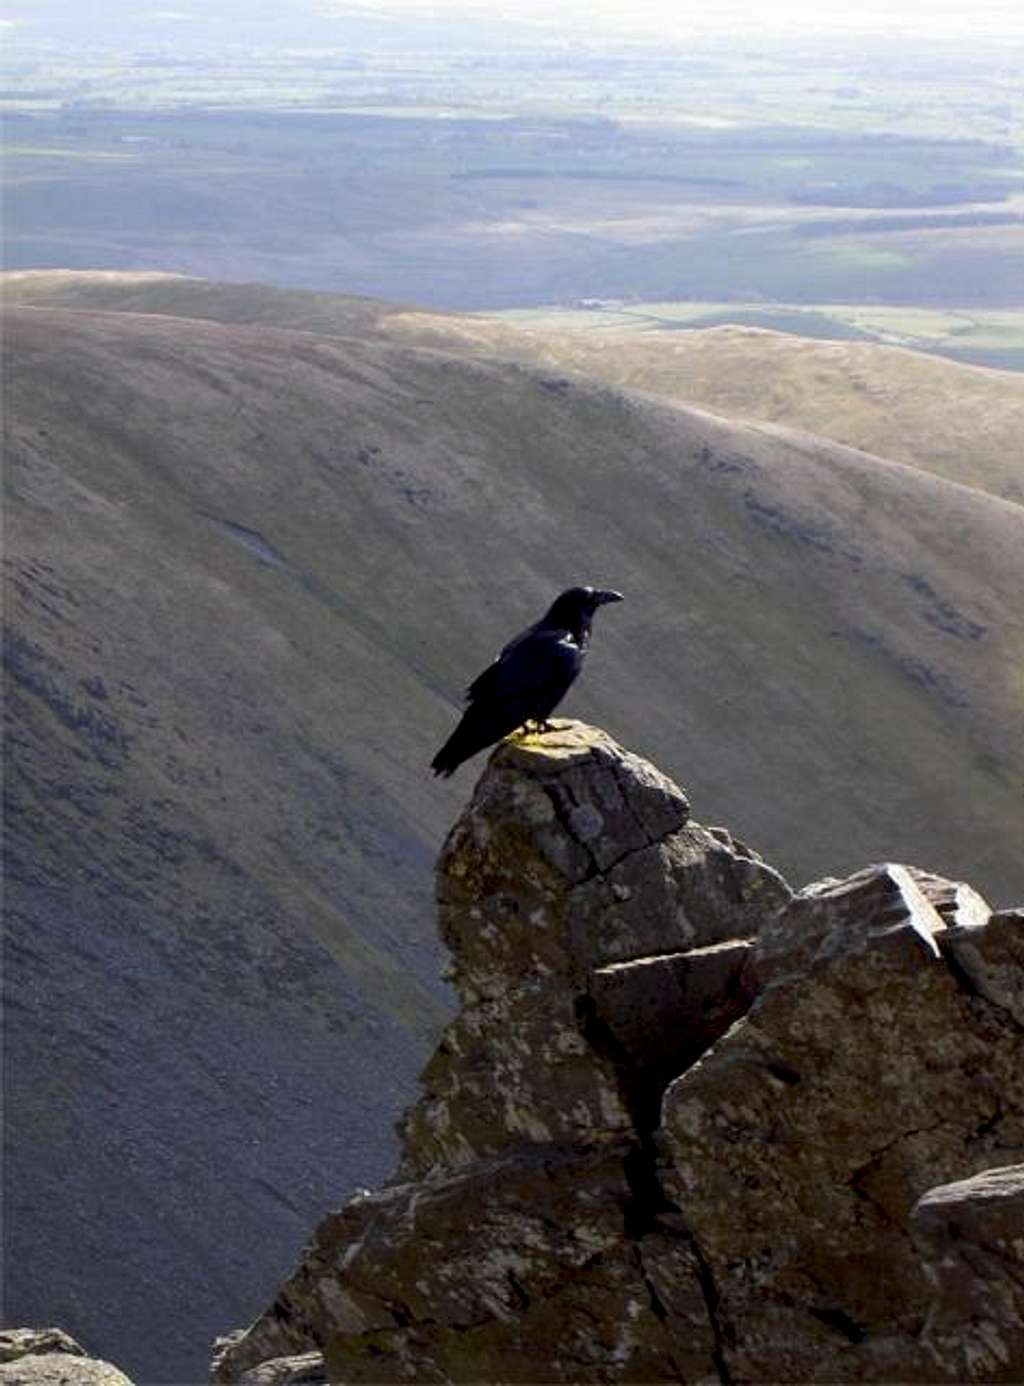 The Raven, emblem of Cumbria,...